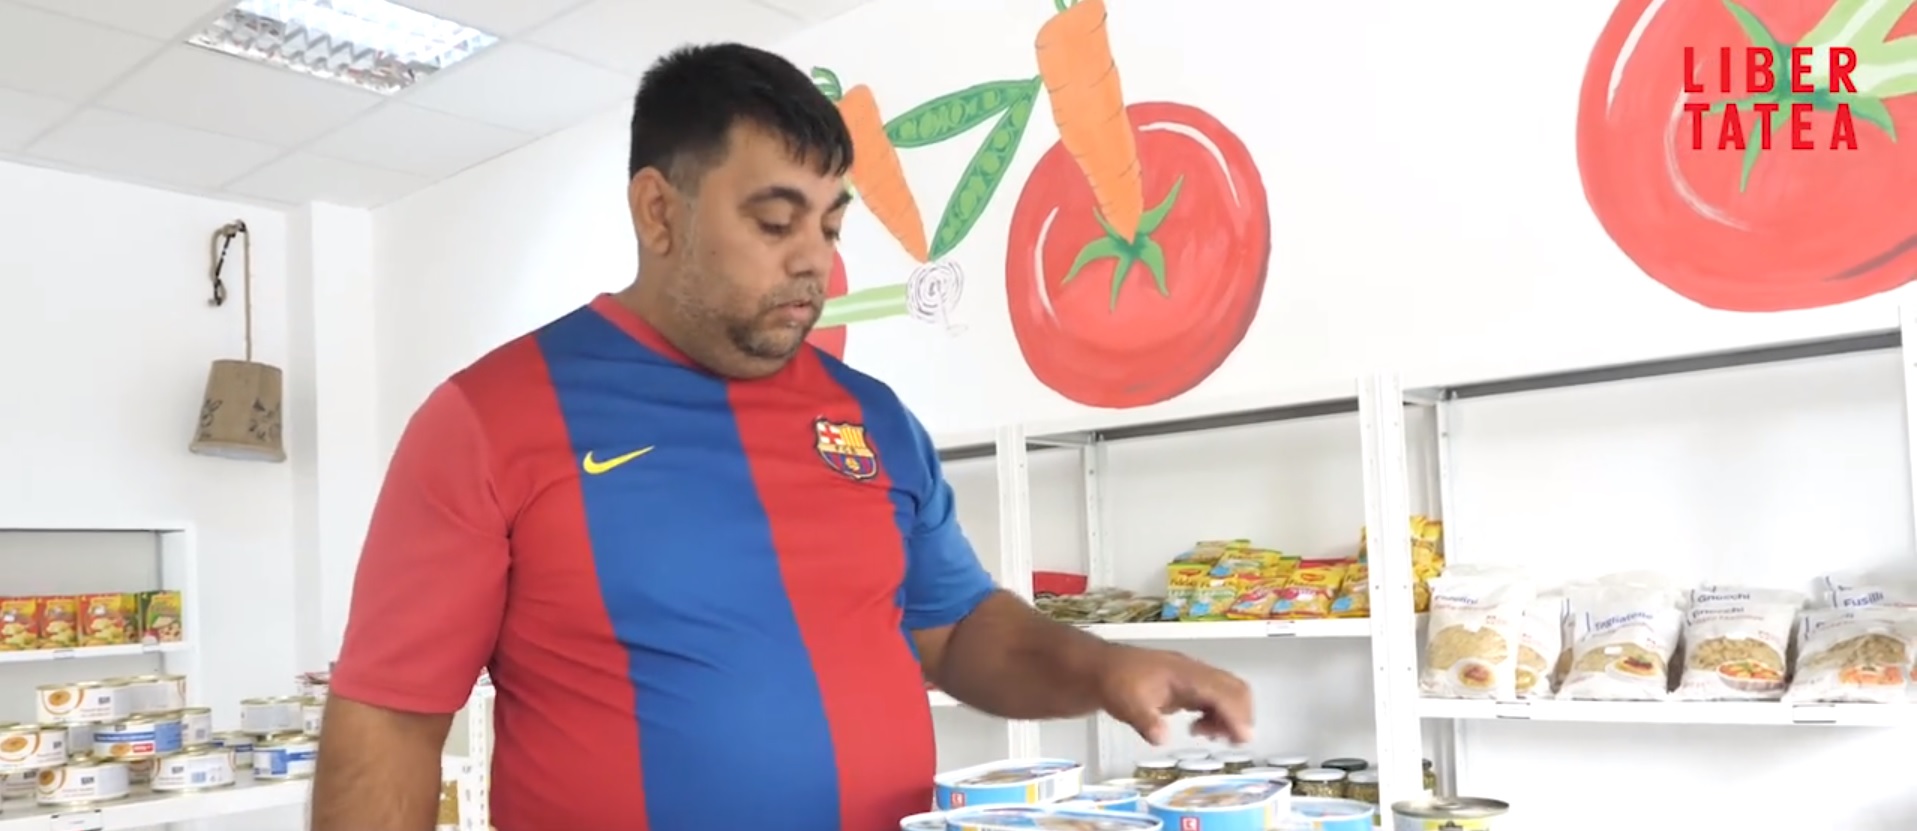 VIDEO! El este eroul care face munca in folosul comunitatii in Bucuresti, pentru a-si tine copiii la scoala